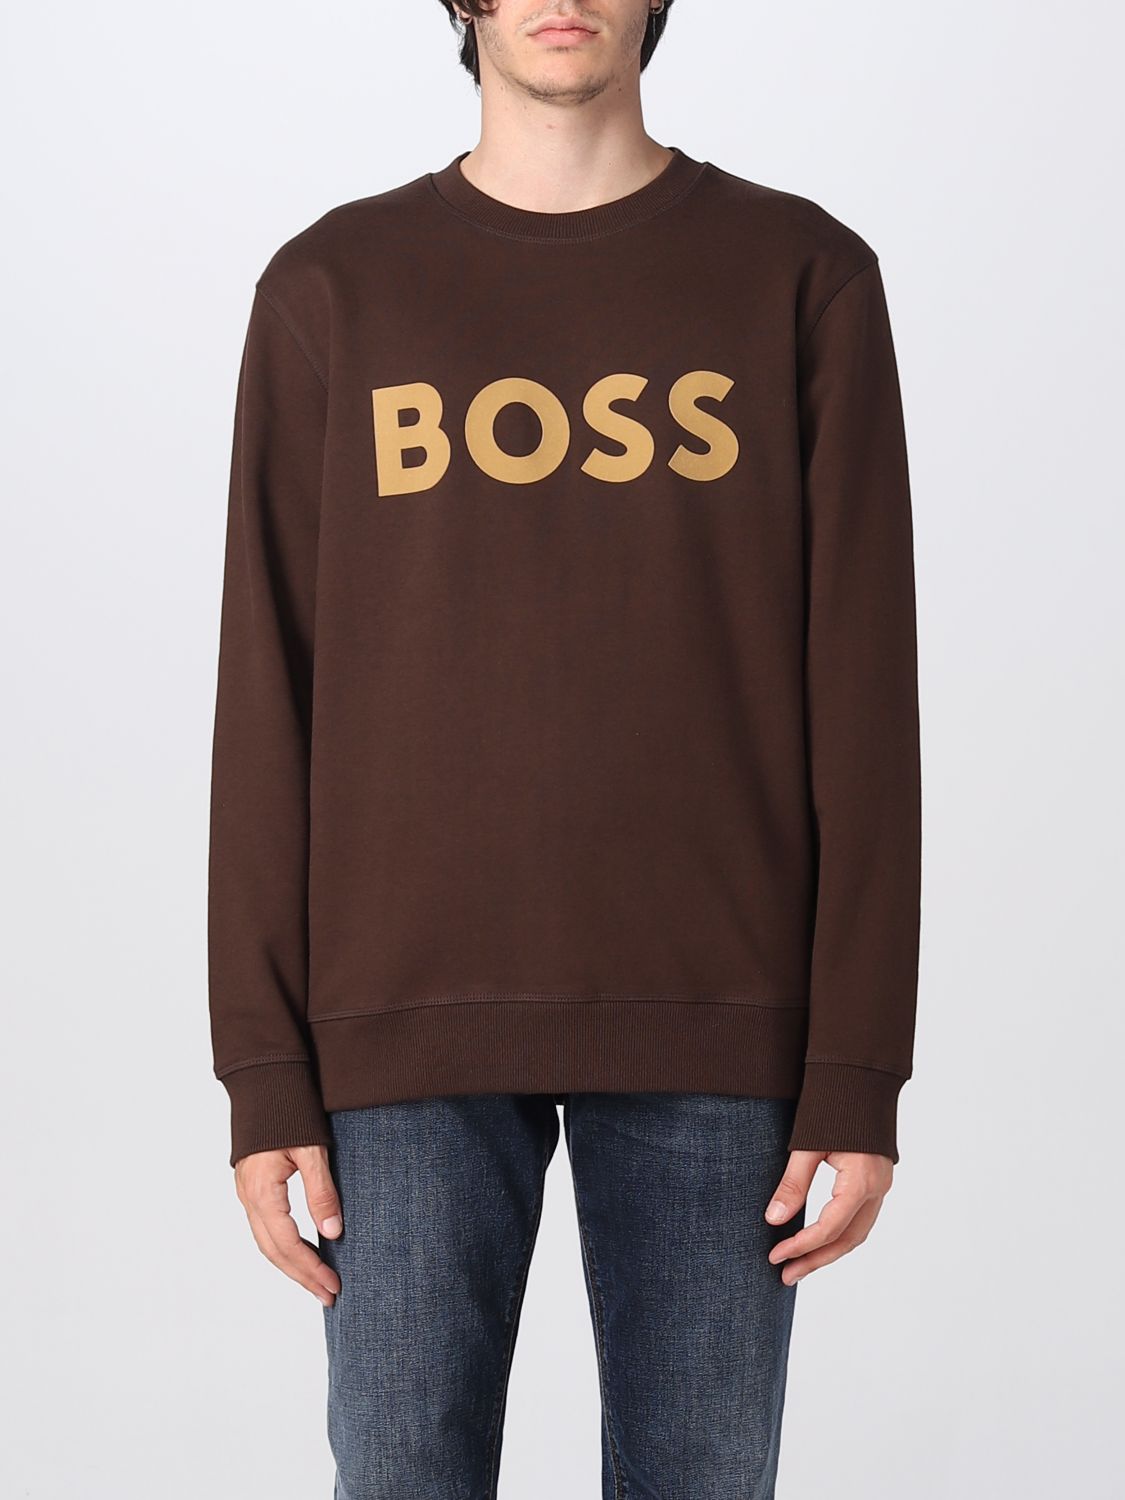 Hugo Boss Sweatshirt Boss Men Color Brown